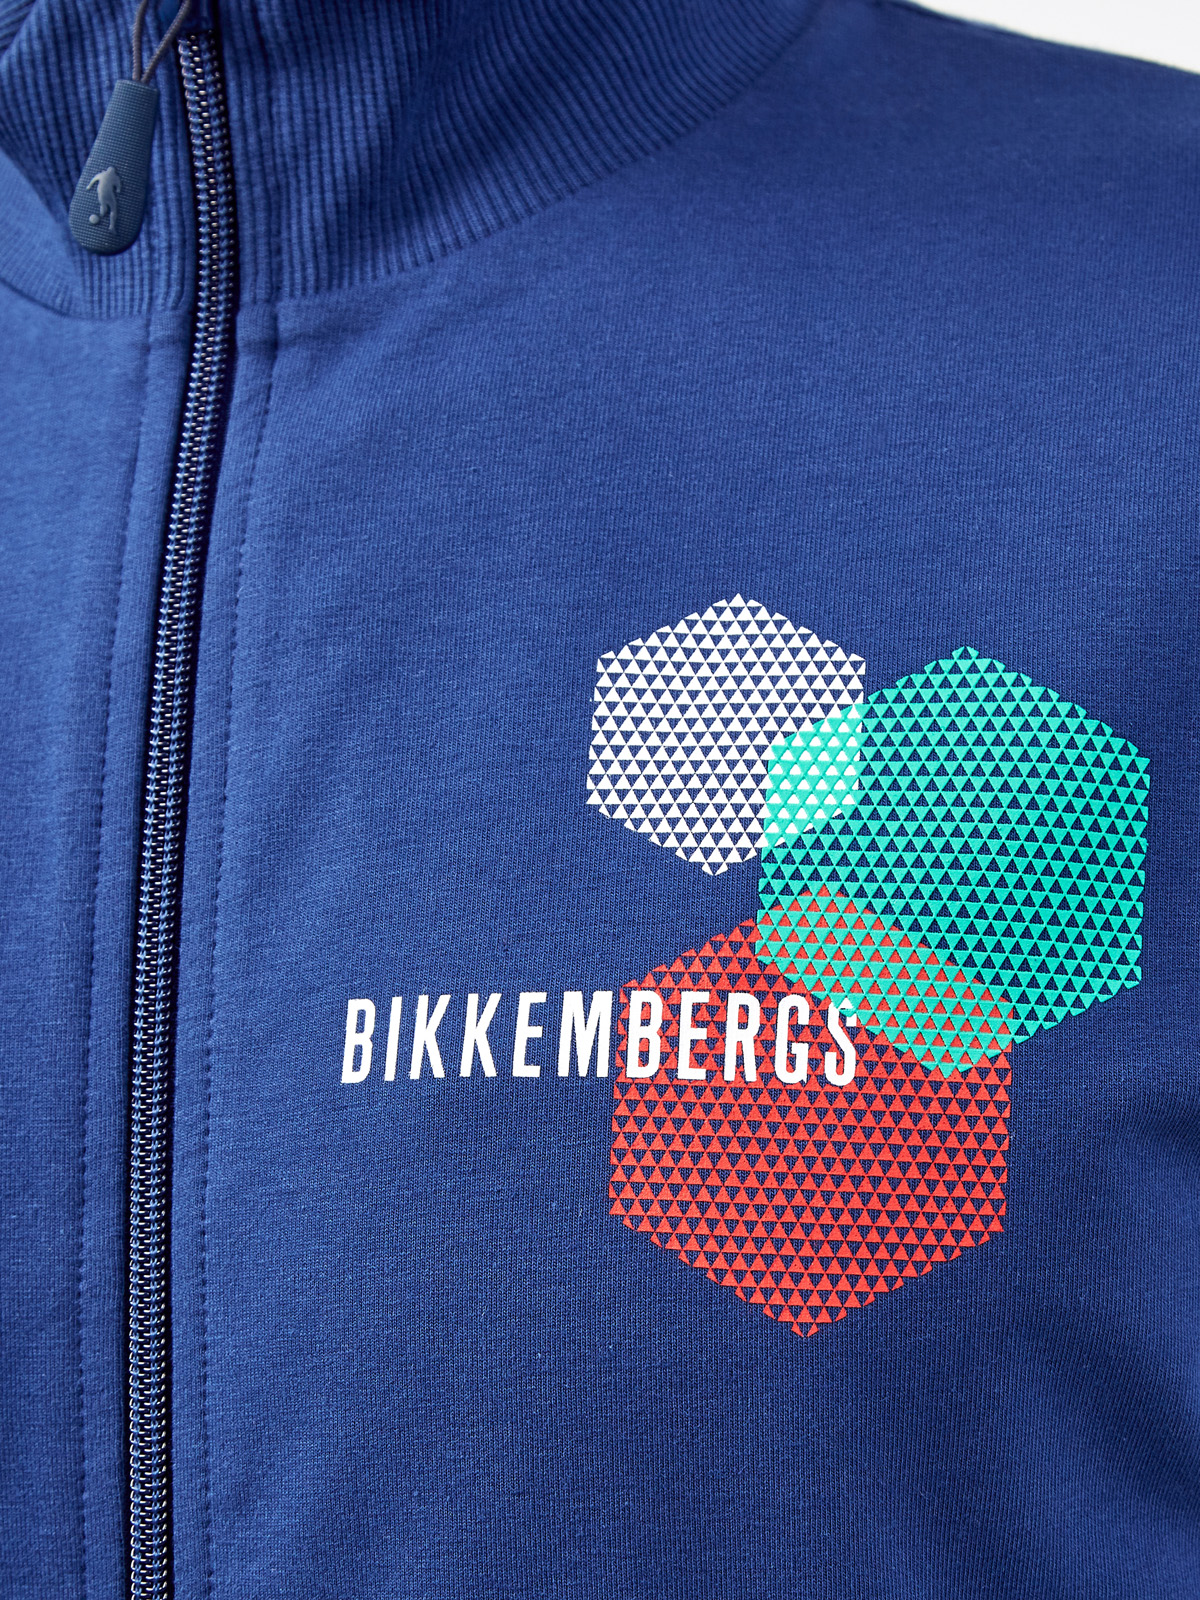 Толстовка в спортивном стиле с графическим принтом и логотипом BIKKEMBERGS, цвет синий, размер L;XL;2XL;3XL - фото 5